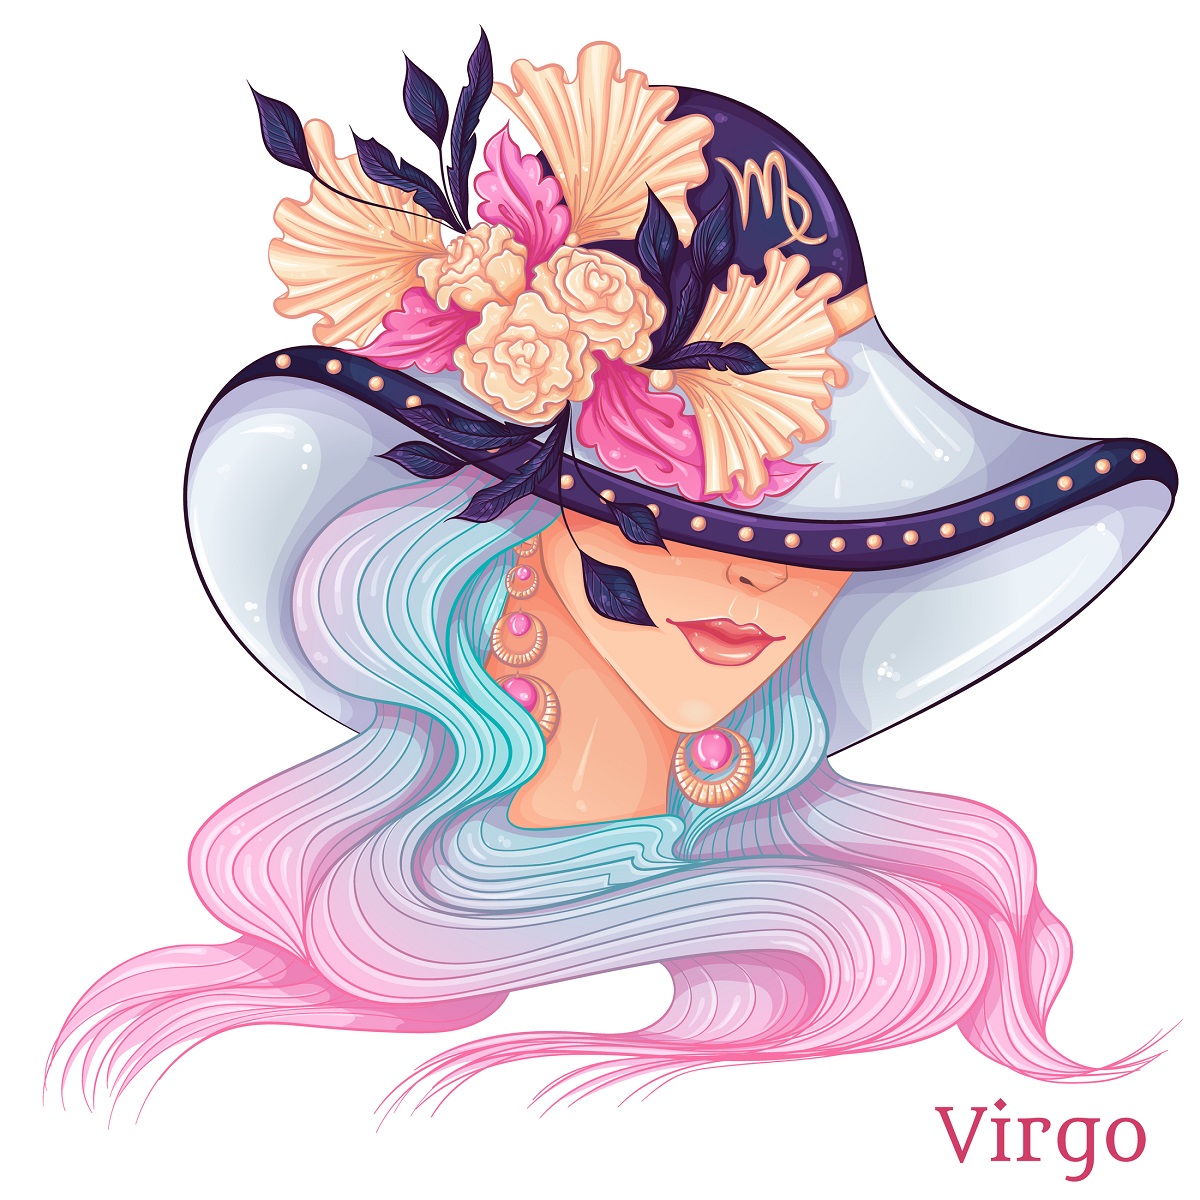 O femeie frumoasă cu o pălărrie mare pe cap cu flori pentru a reprezenta zodia fecioarei